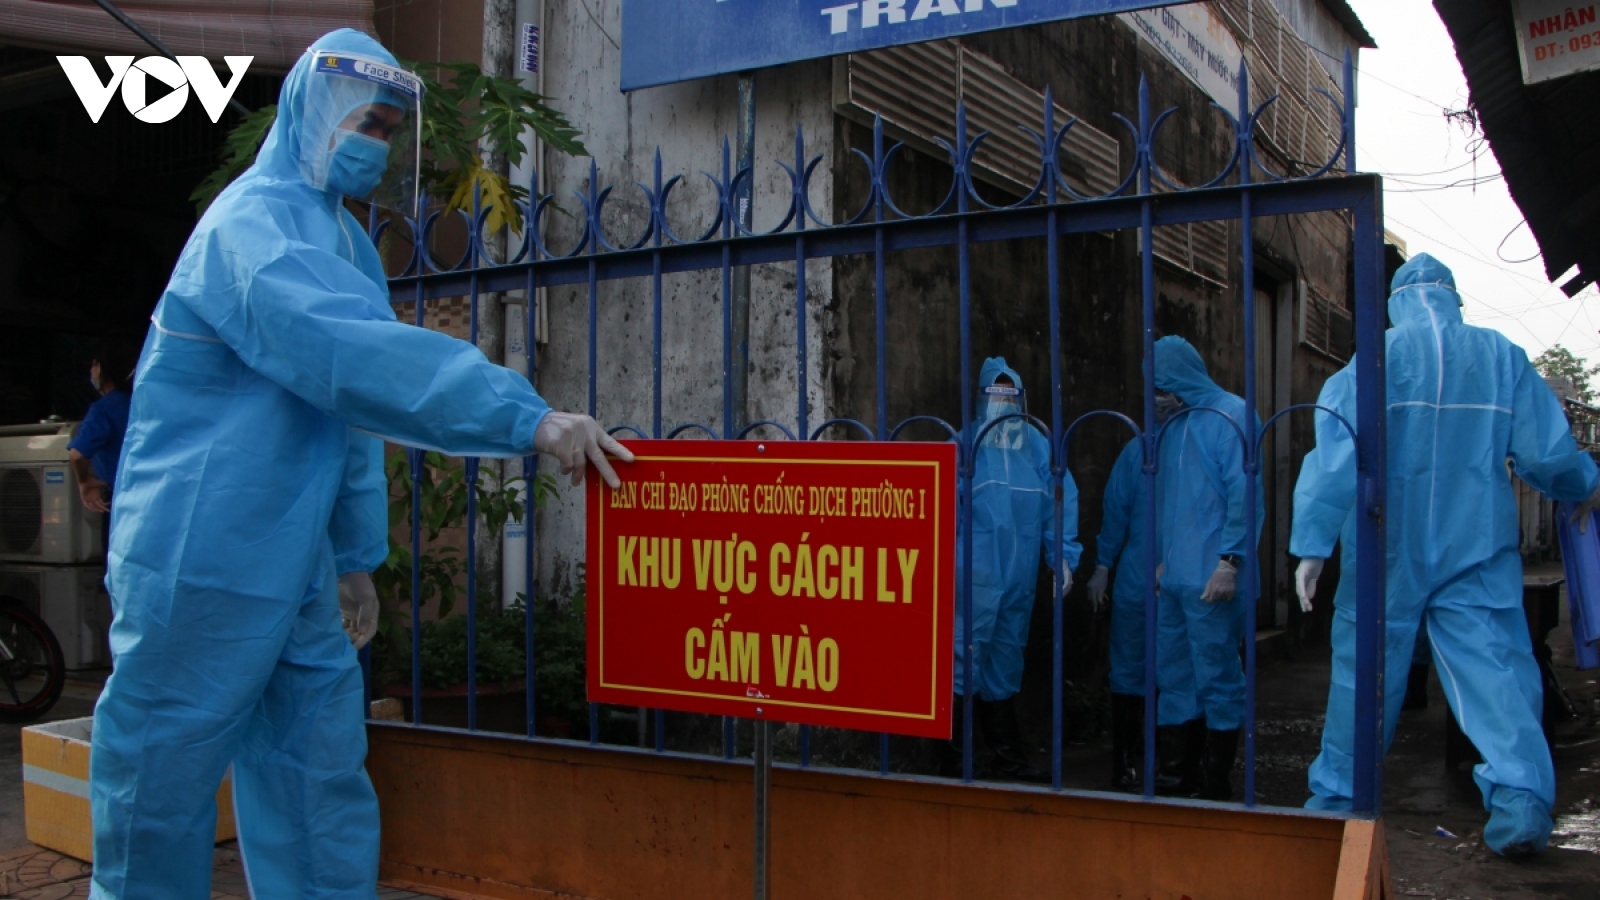 "Cách ly F0 tại nhà ở Việt Nam thận trọng hơn các nước để tránh rủi ro"